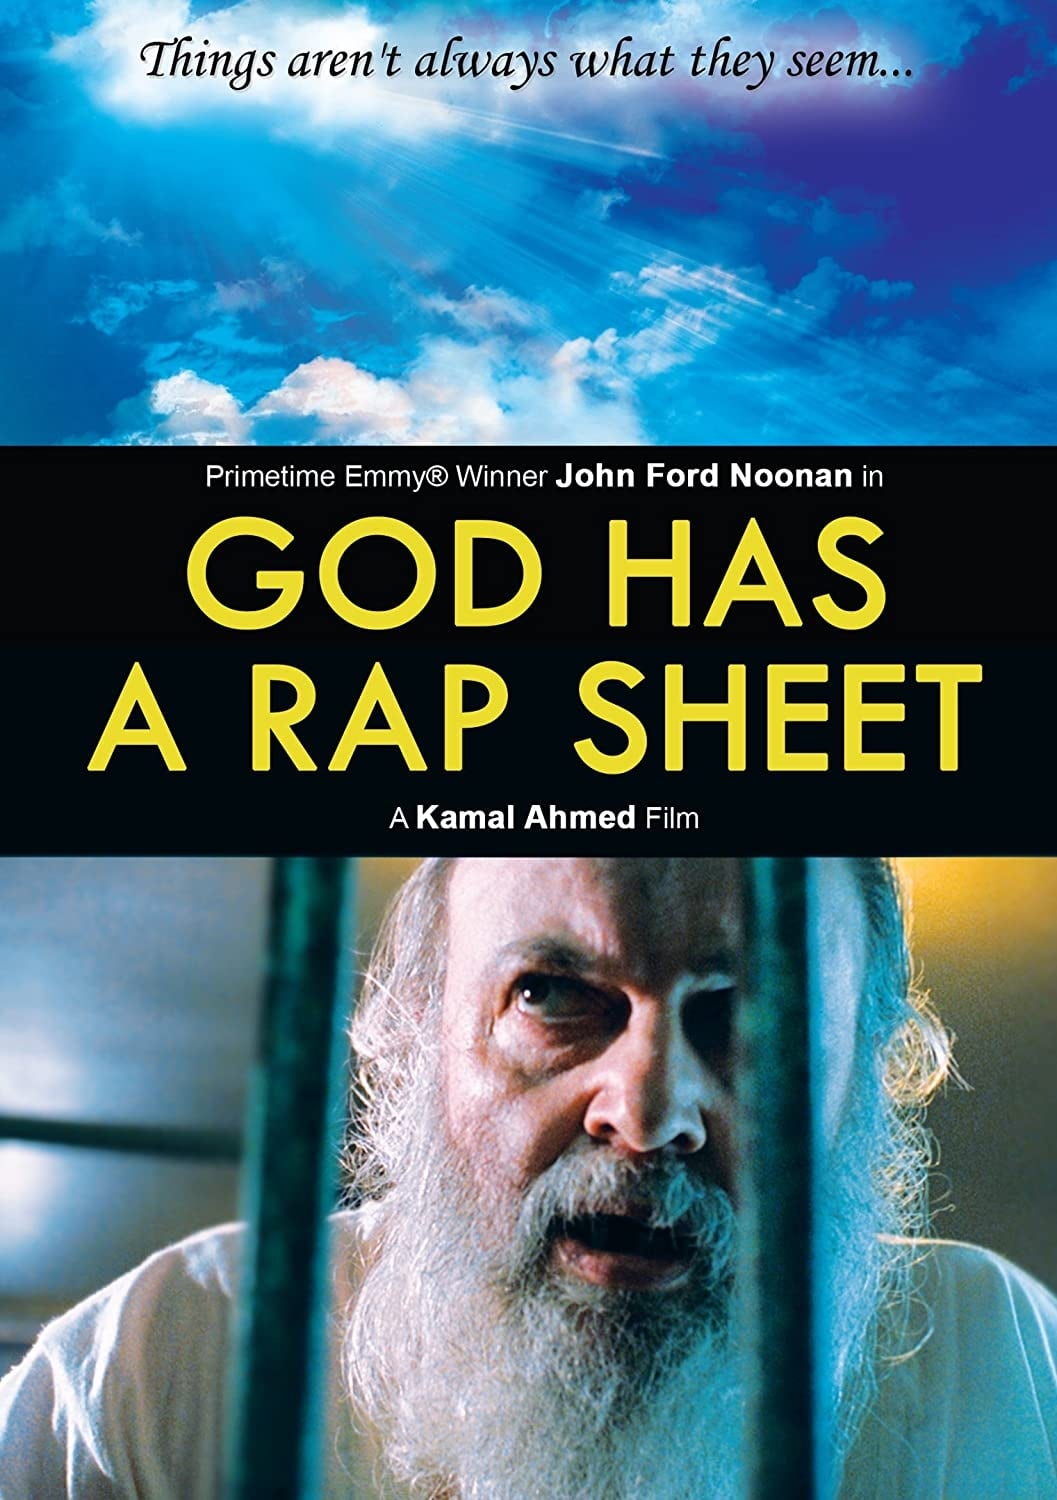 God Has a Rap Sheet (2003)